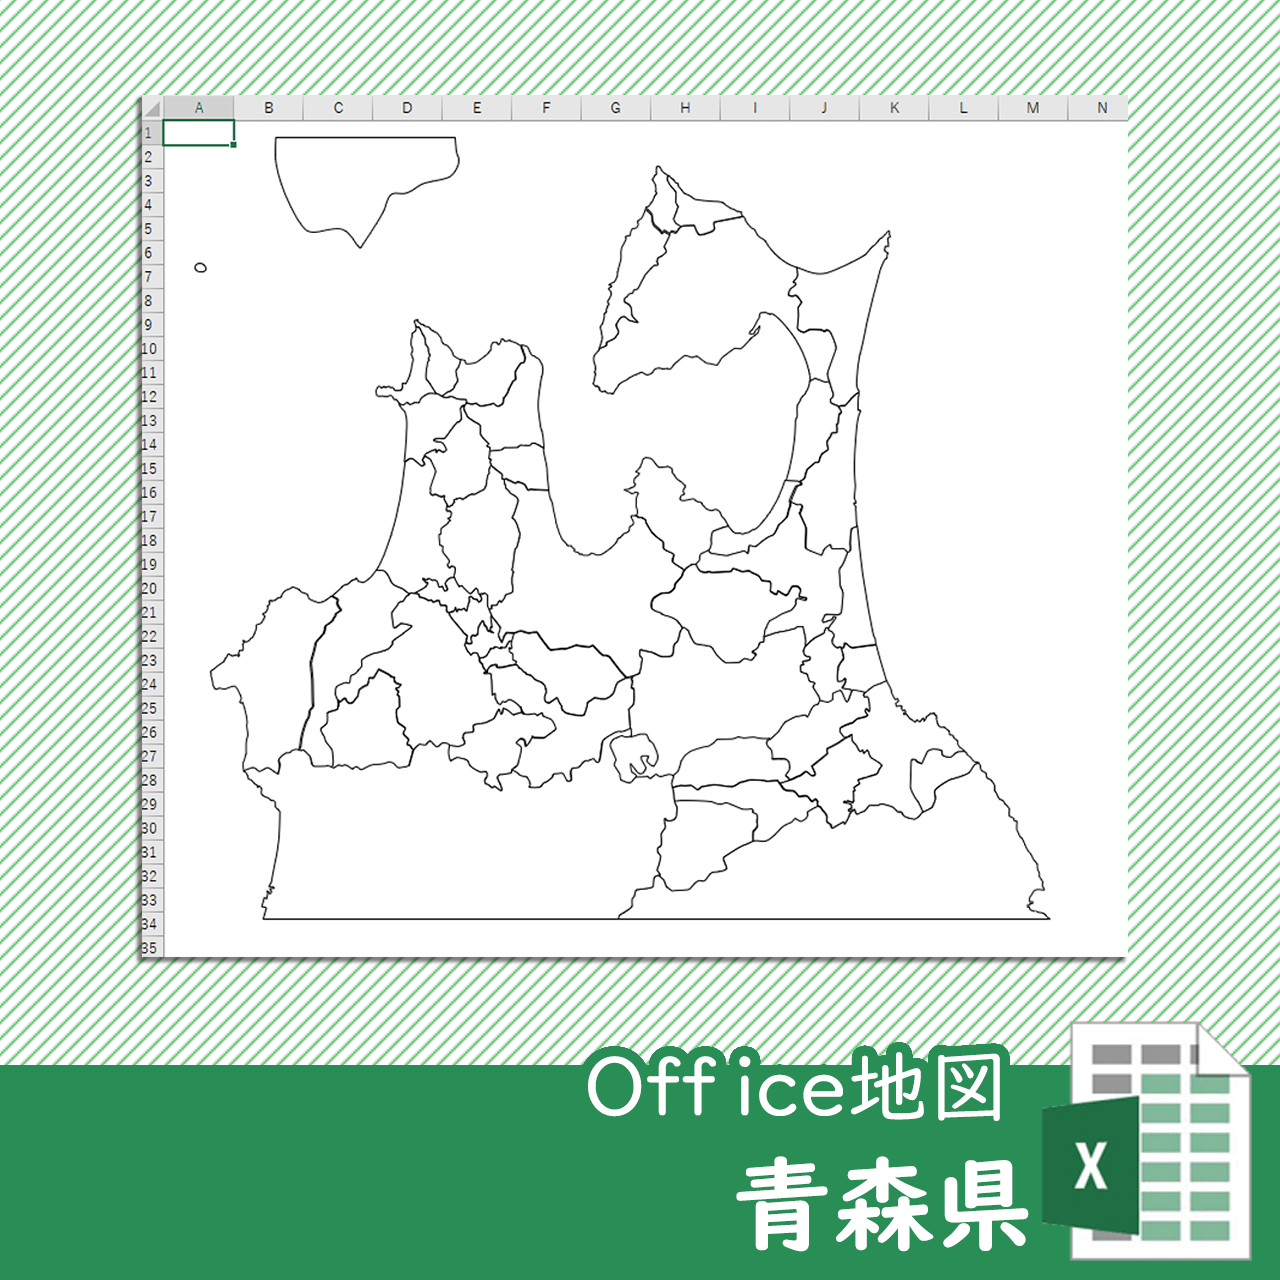 青森県のoffice地図